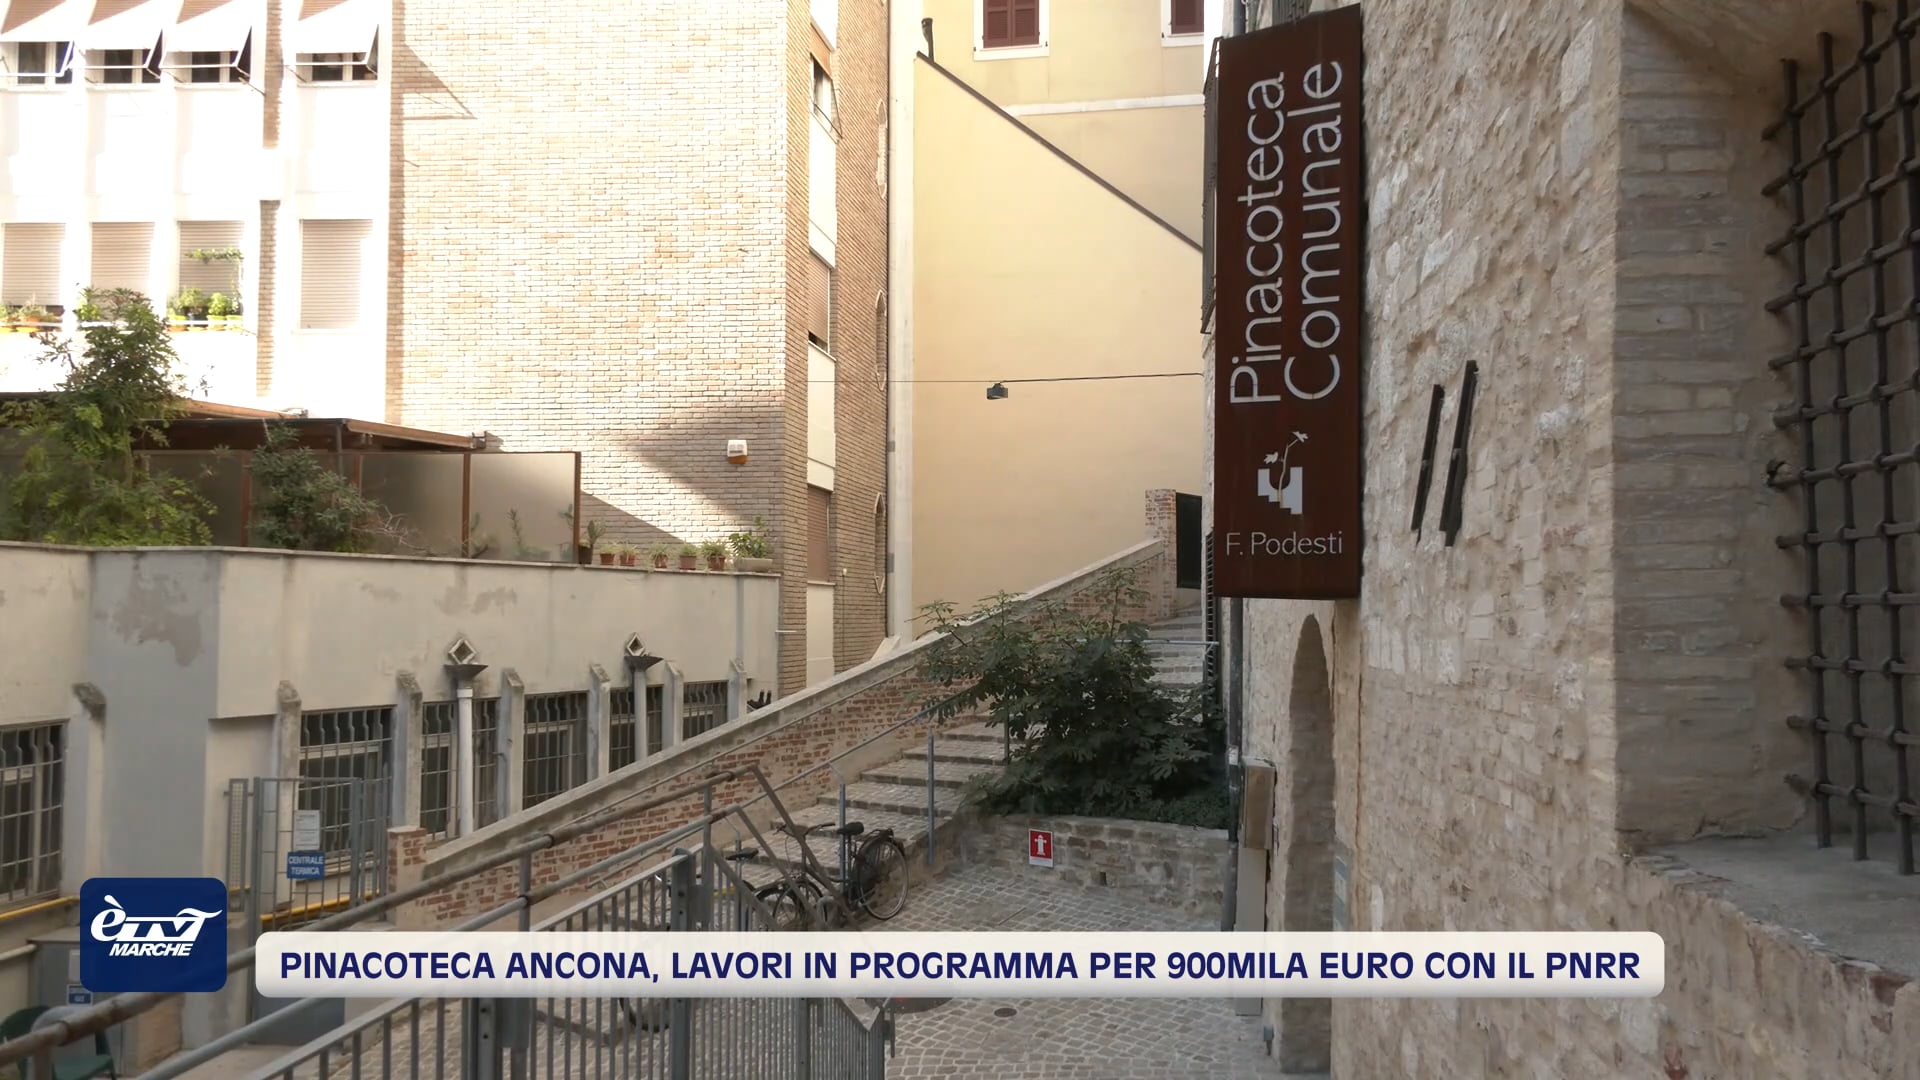 Pinacoteca Ancona, lavori in programma per 900mila euro con il Pnrr - VIDEO